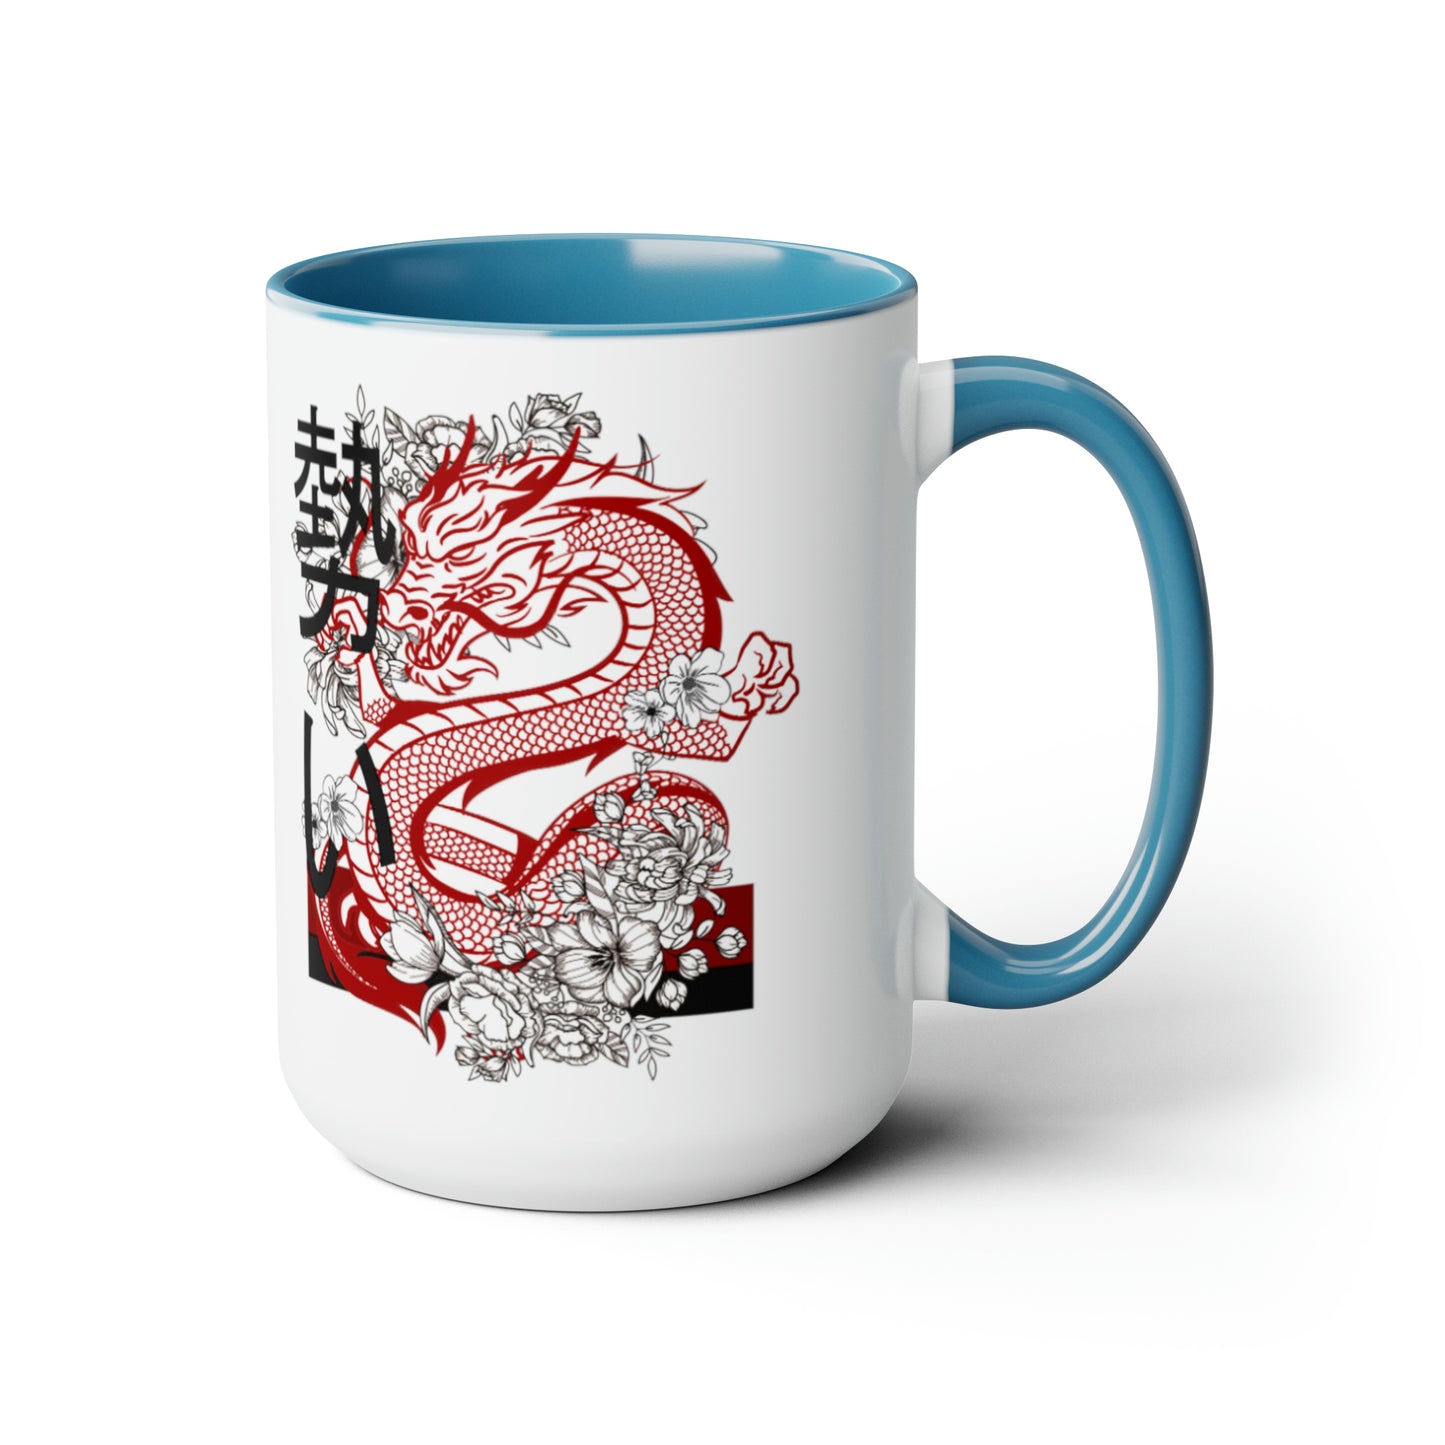 Two-Tone Coffee Mugs, 15oz: Dragons White